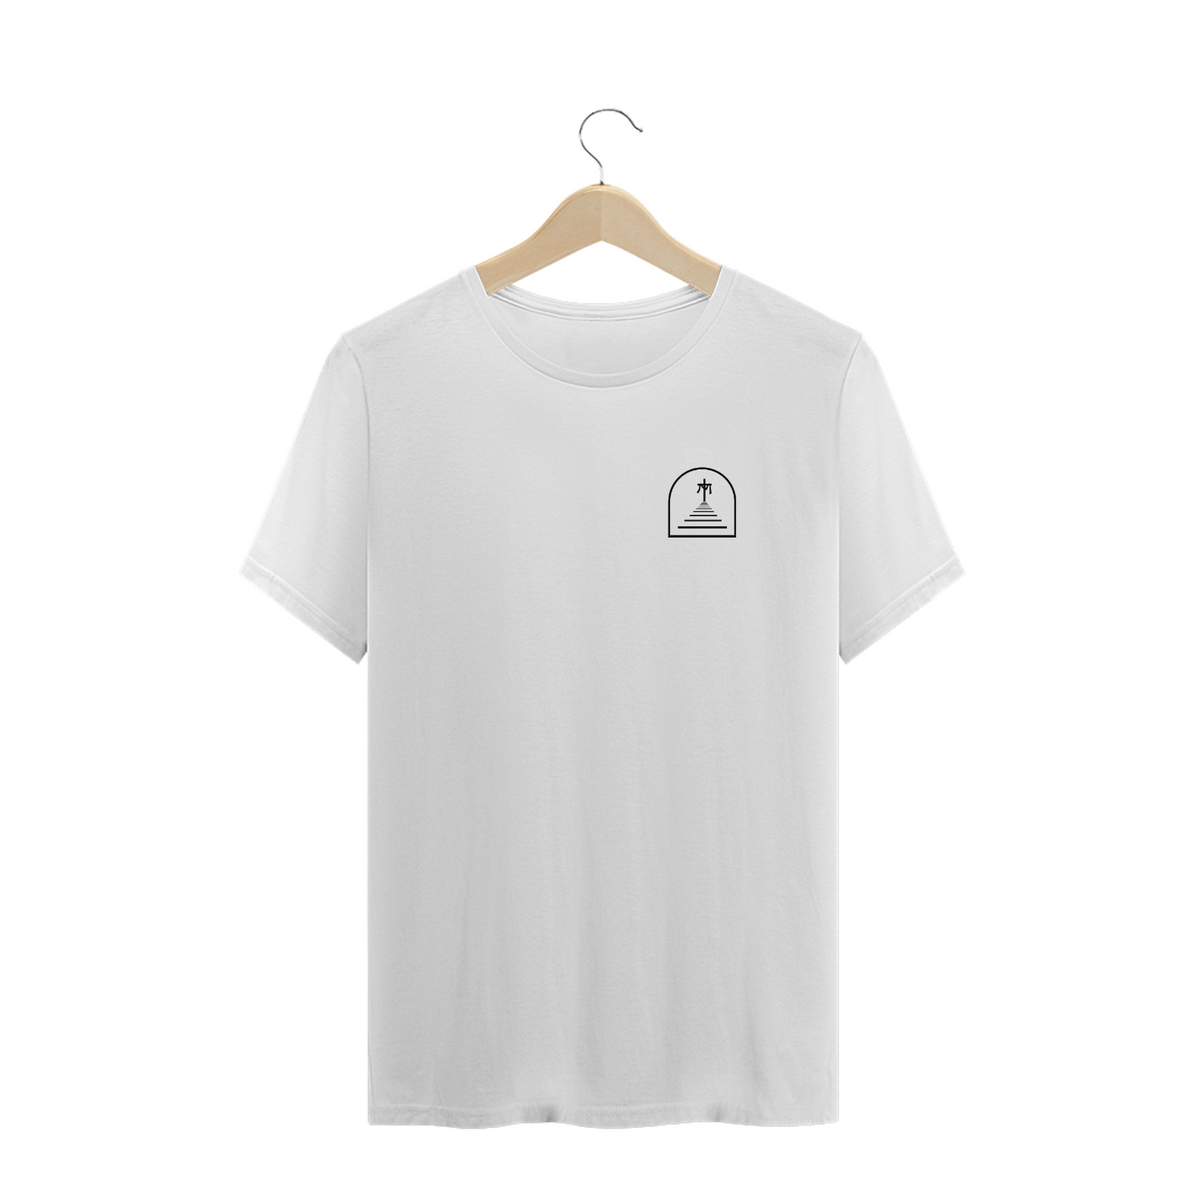 Nome do produto: T-Shirt Ascensão